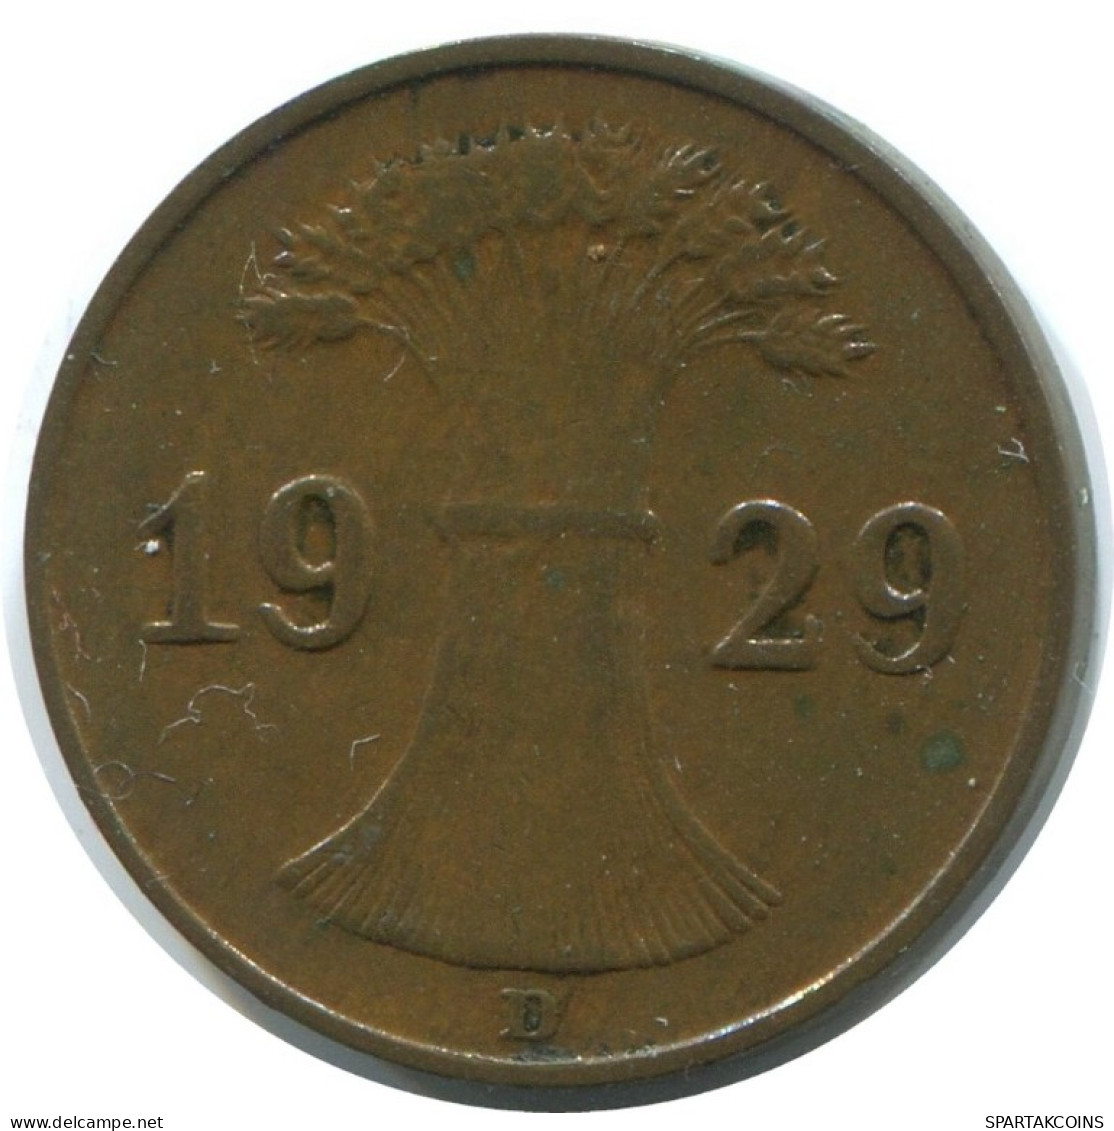 1 REICHSPFENNIG 1929 D GERMANY Coin #AE196.U.A - 1 Rentenpfennig & 1 Reichspfennig